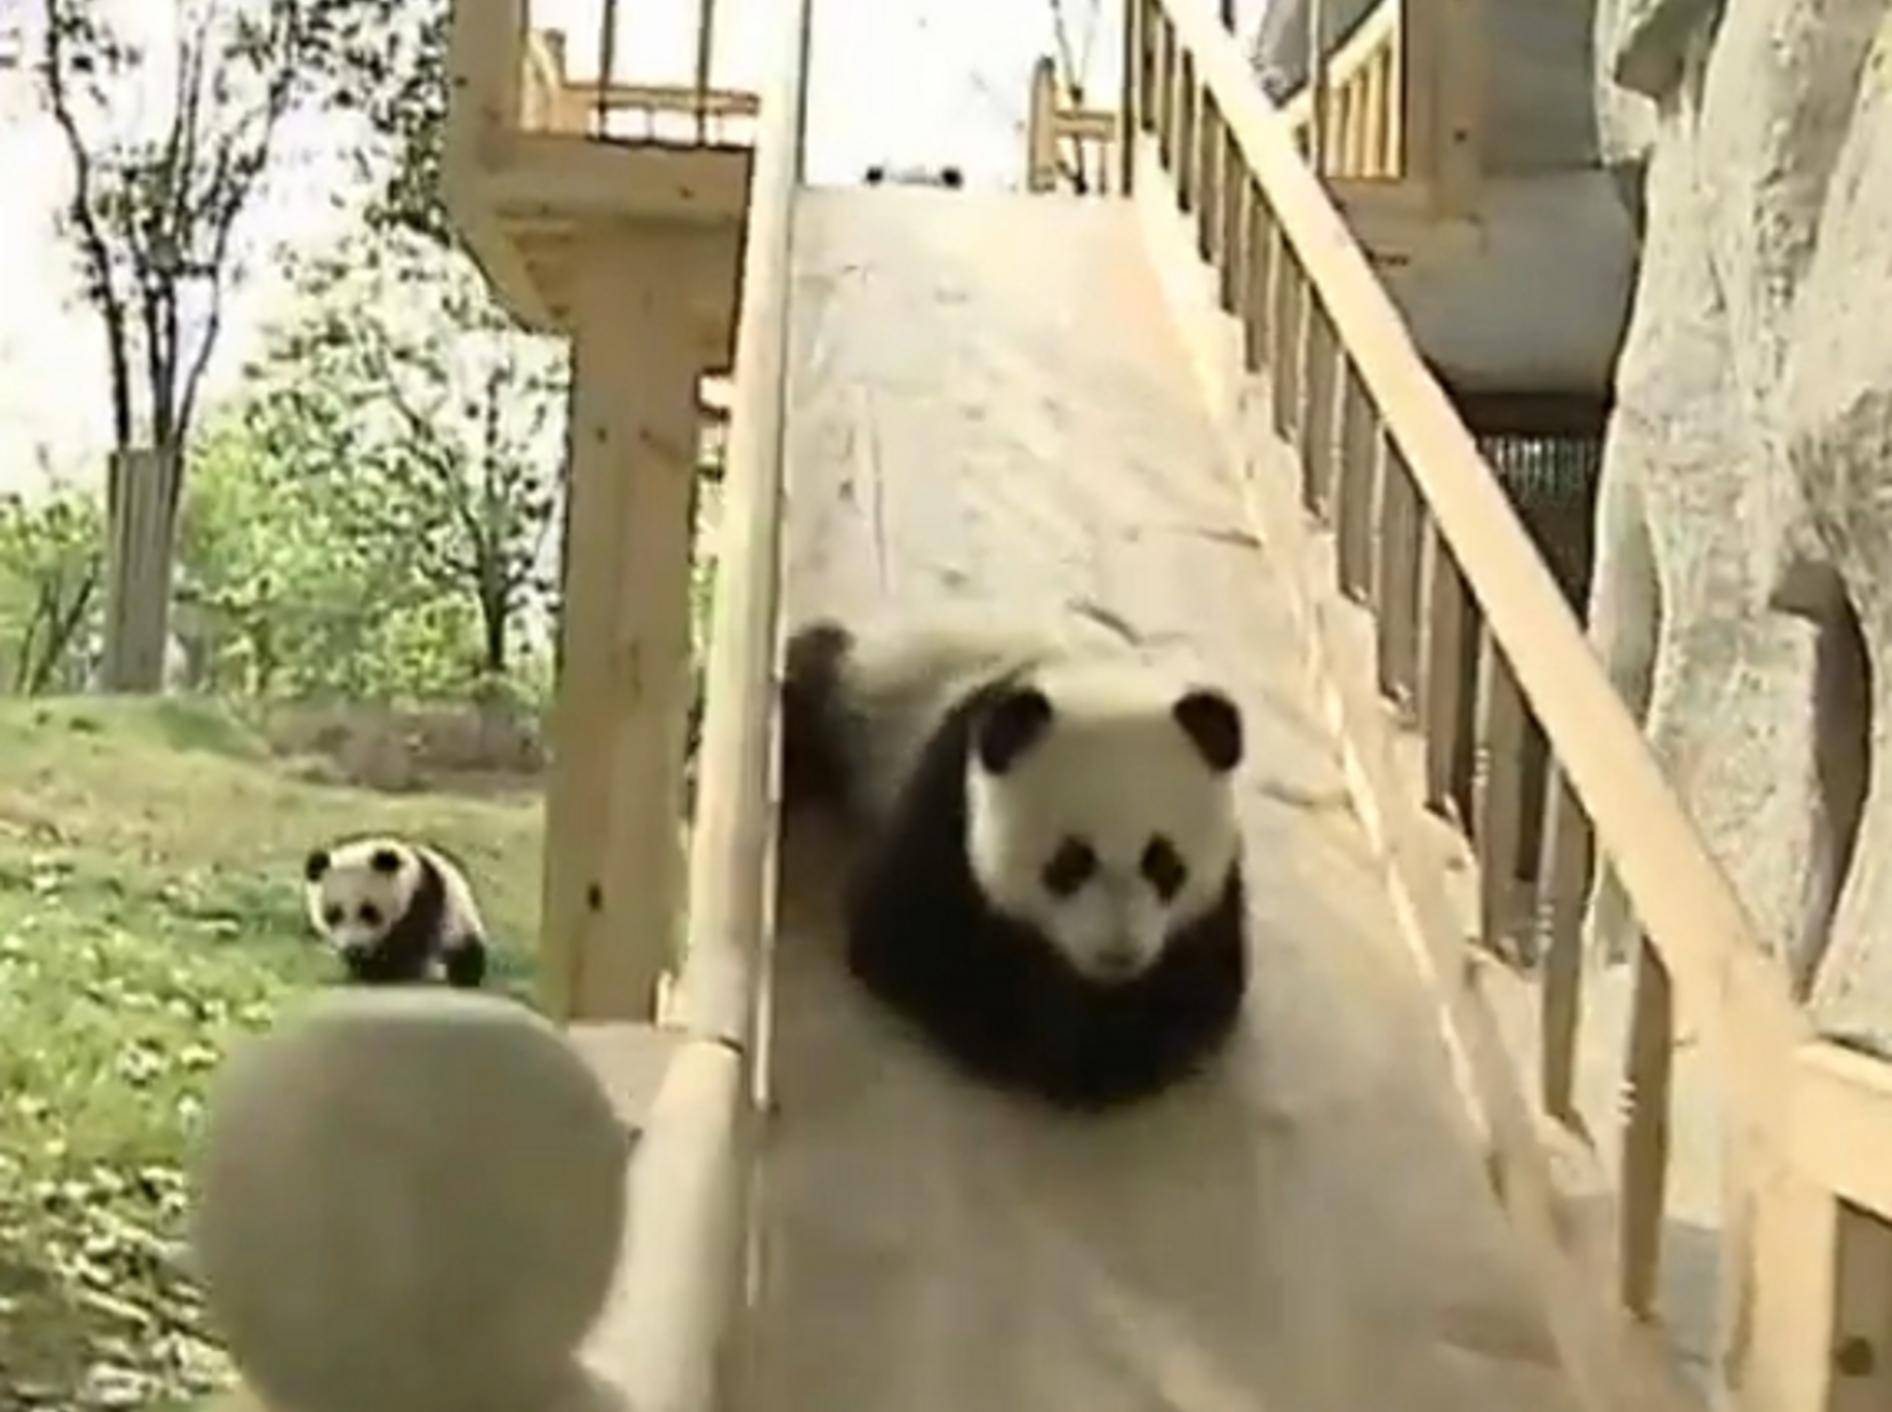 Pandababys lieben ihre Holzrutsche